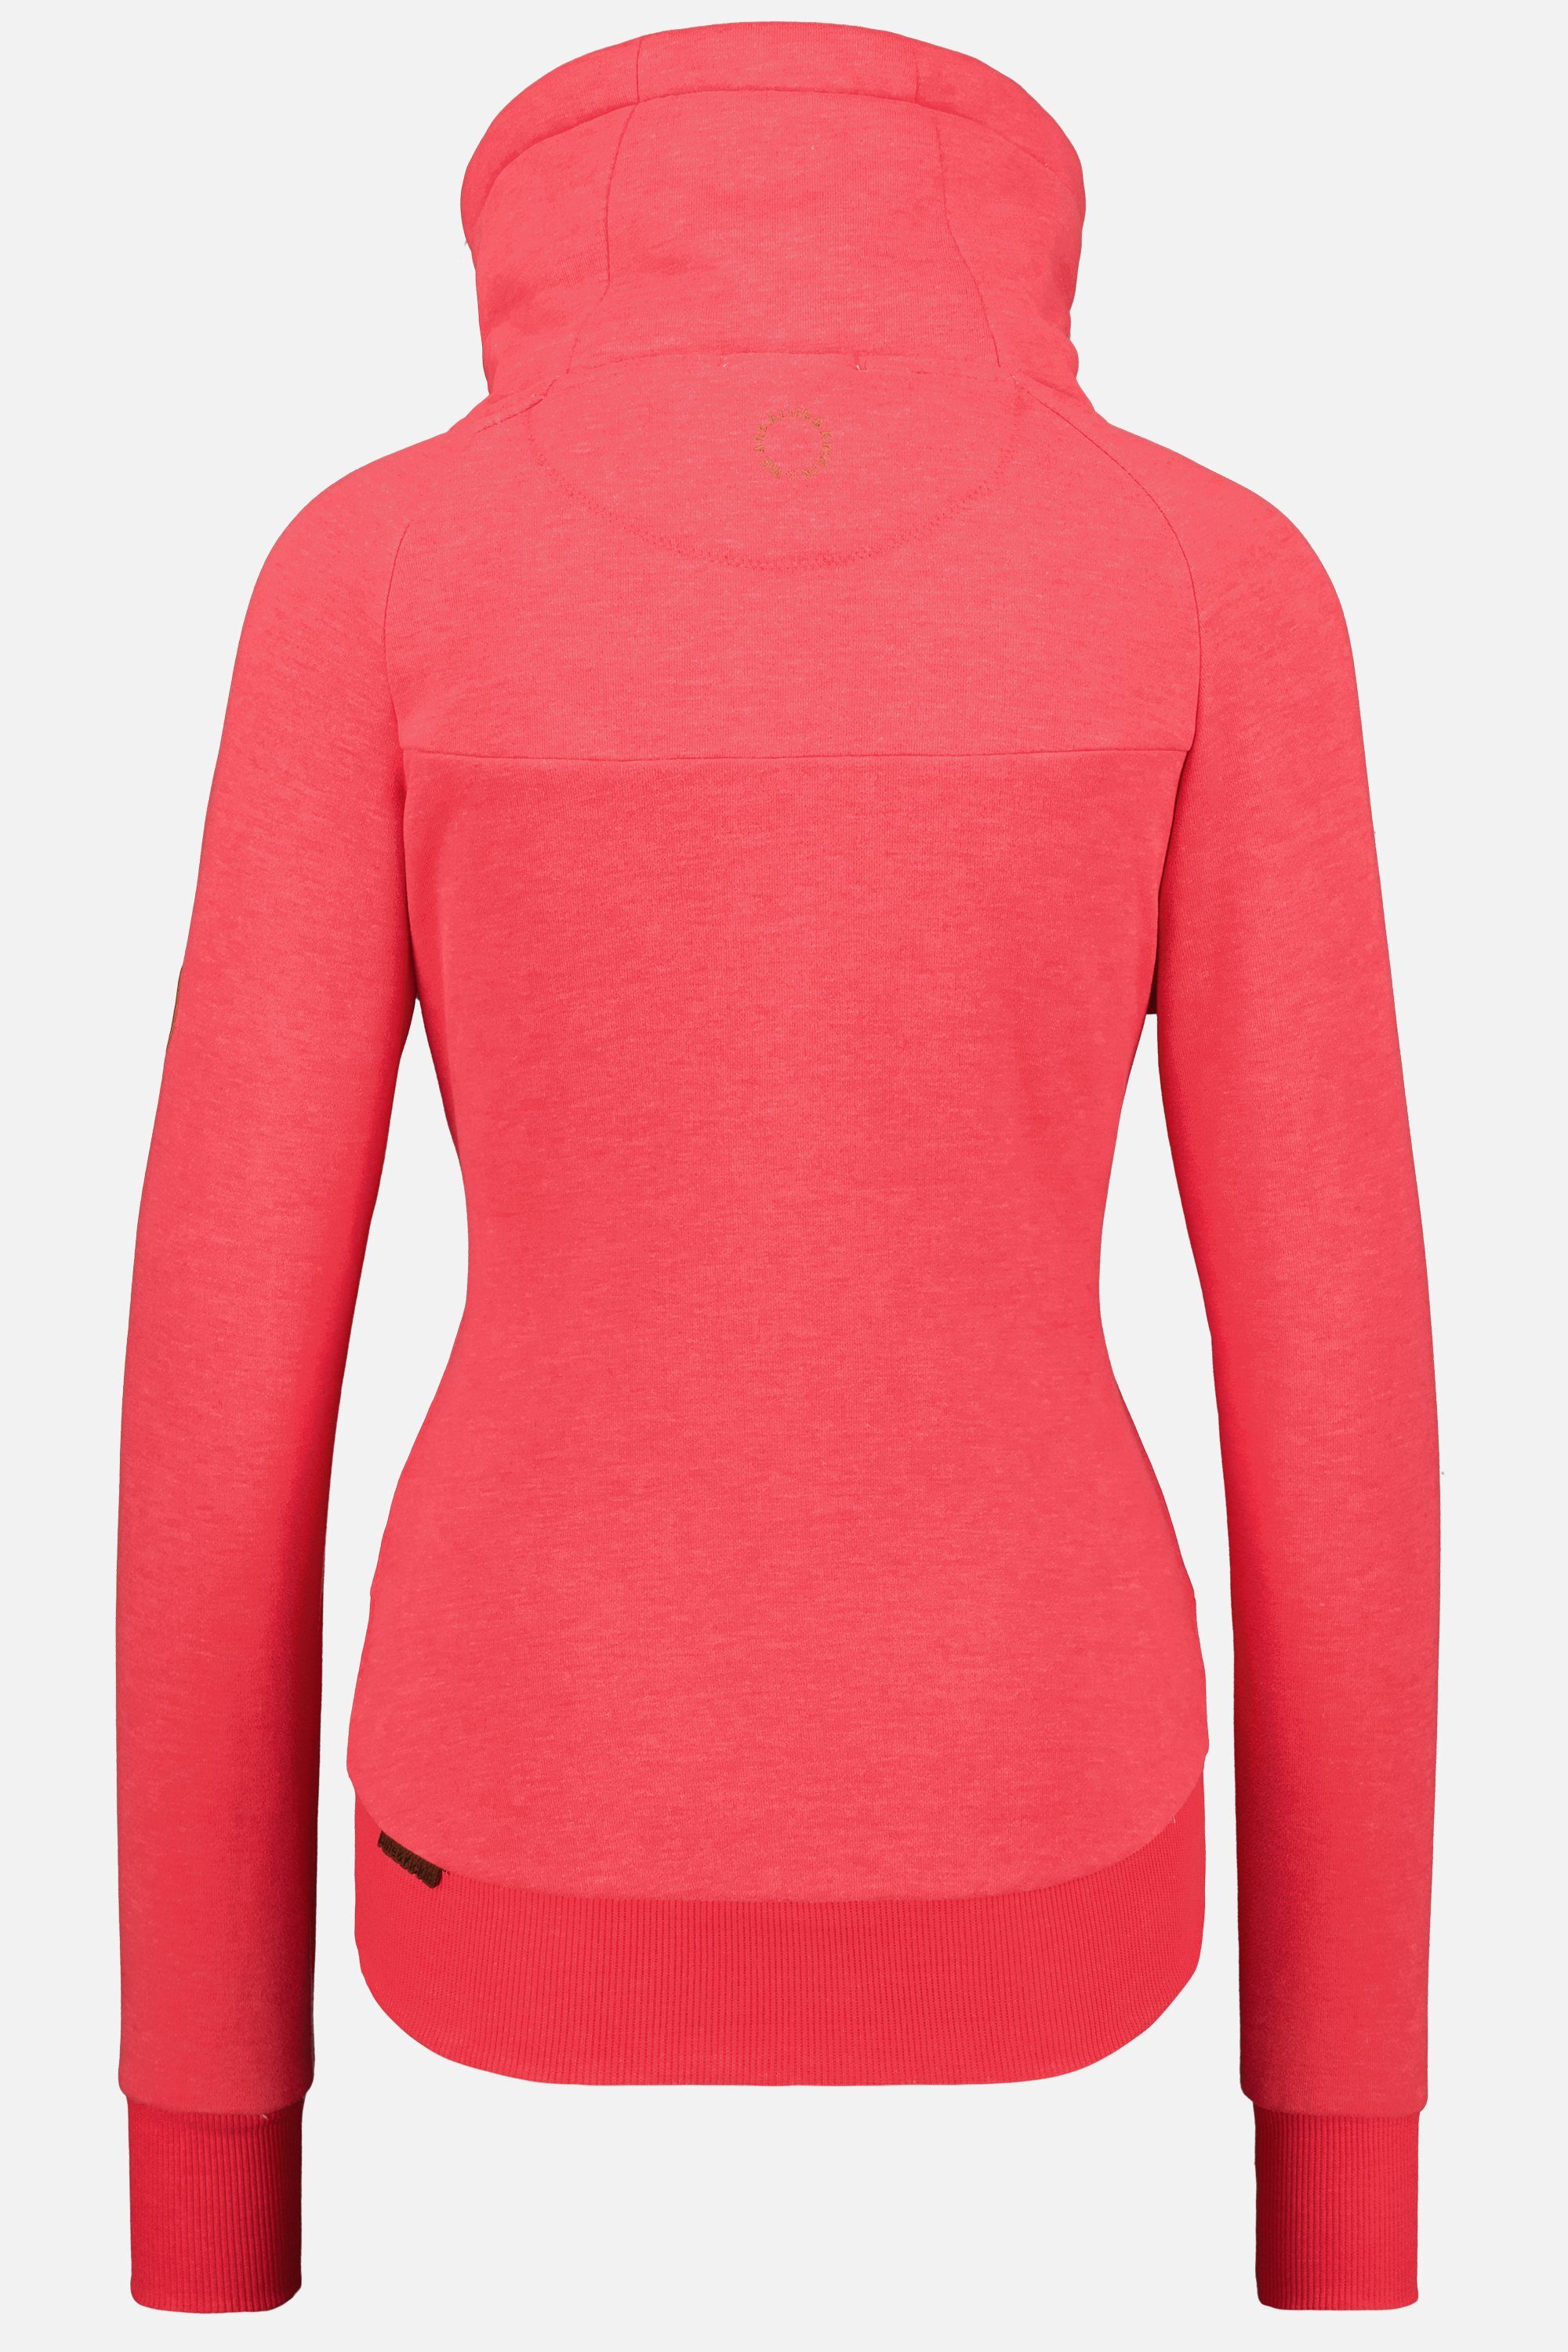 Alife & Kickin Sweatshirt A melange VioletAK Pullover Sweatshirt coral Rundhalspullover, Damen